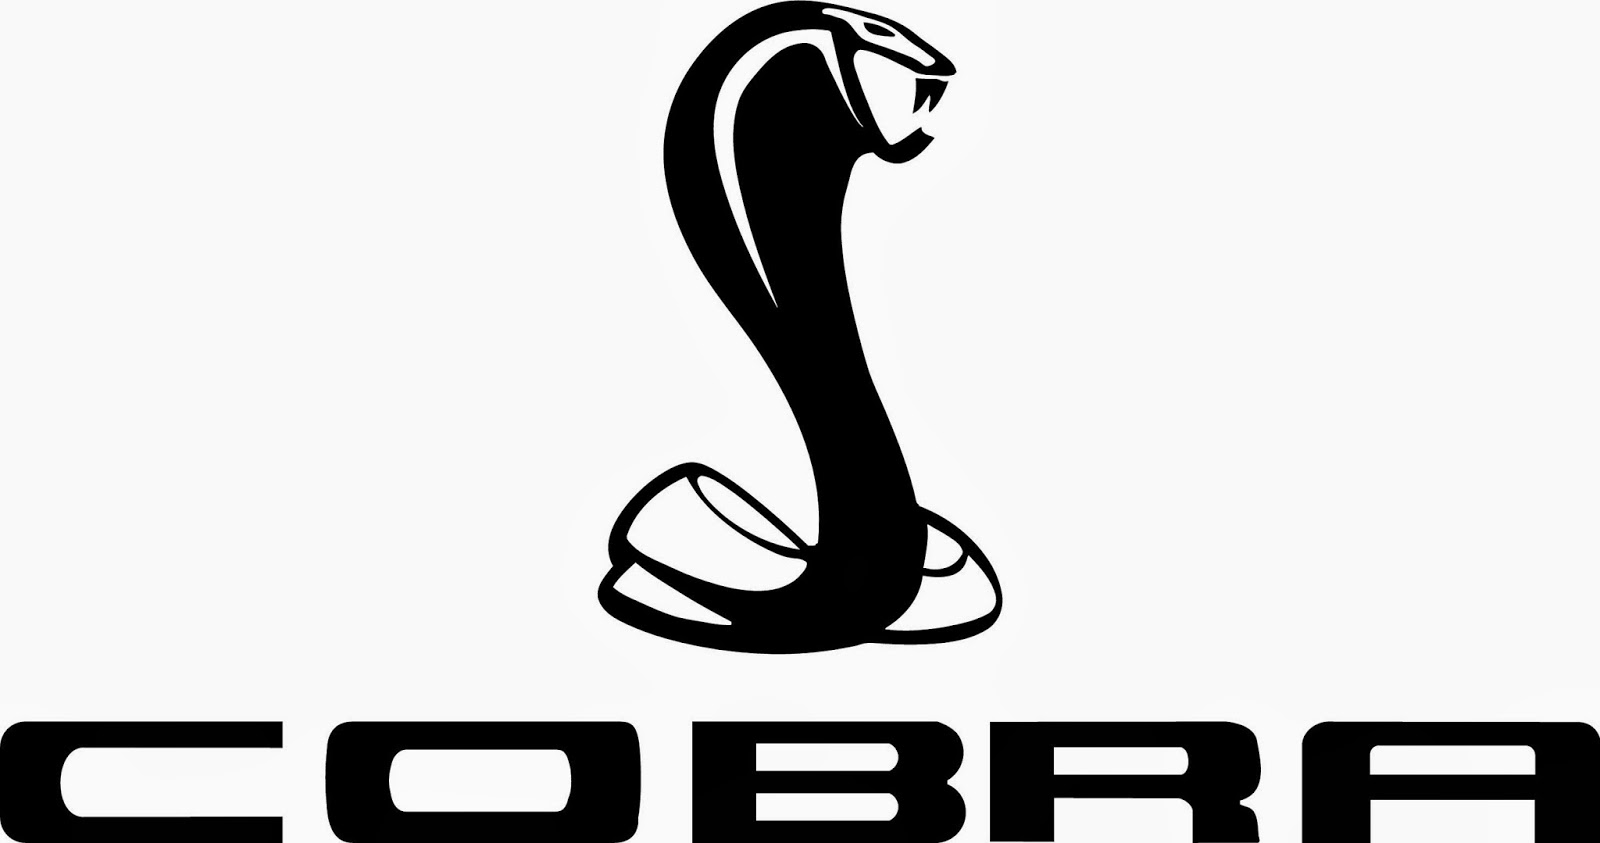 Ford mustang cobra logo vector #6